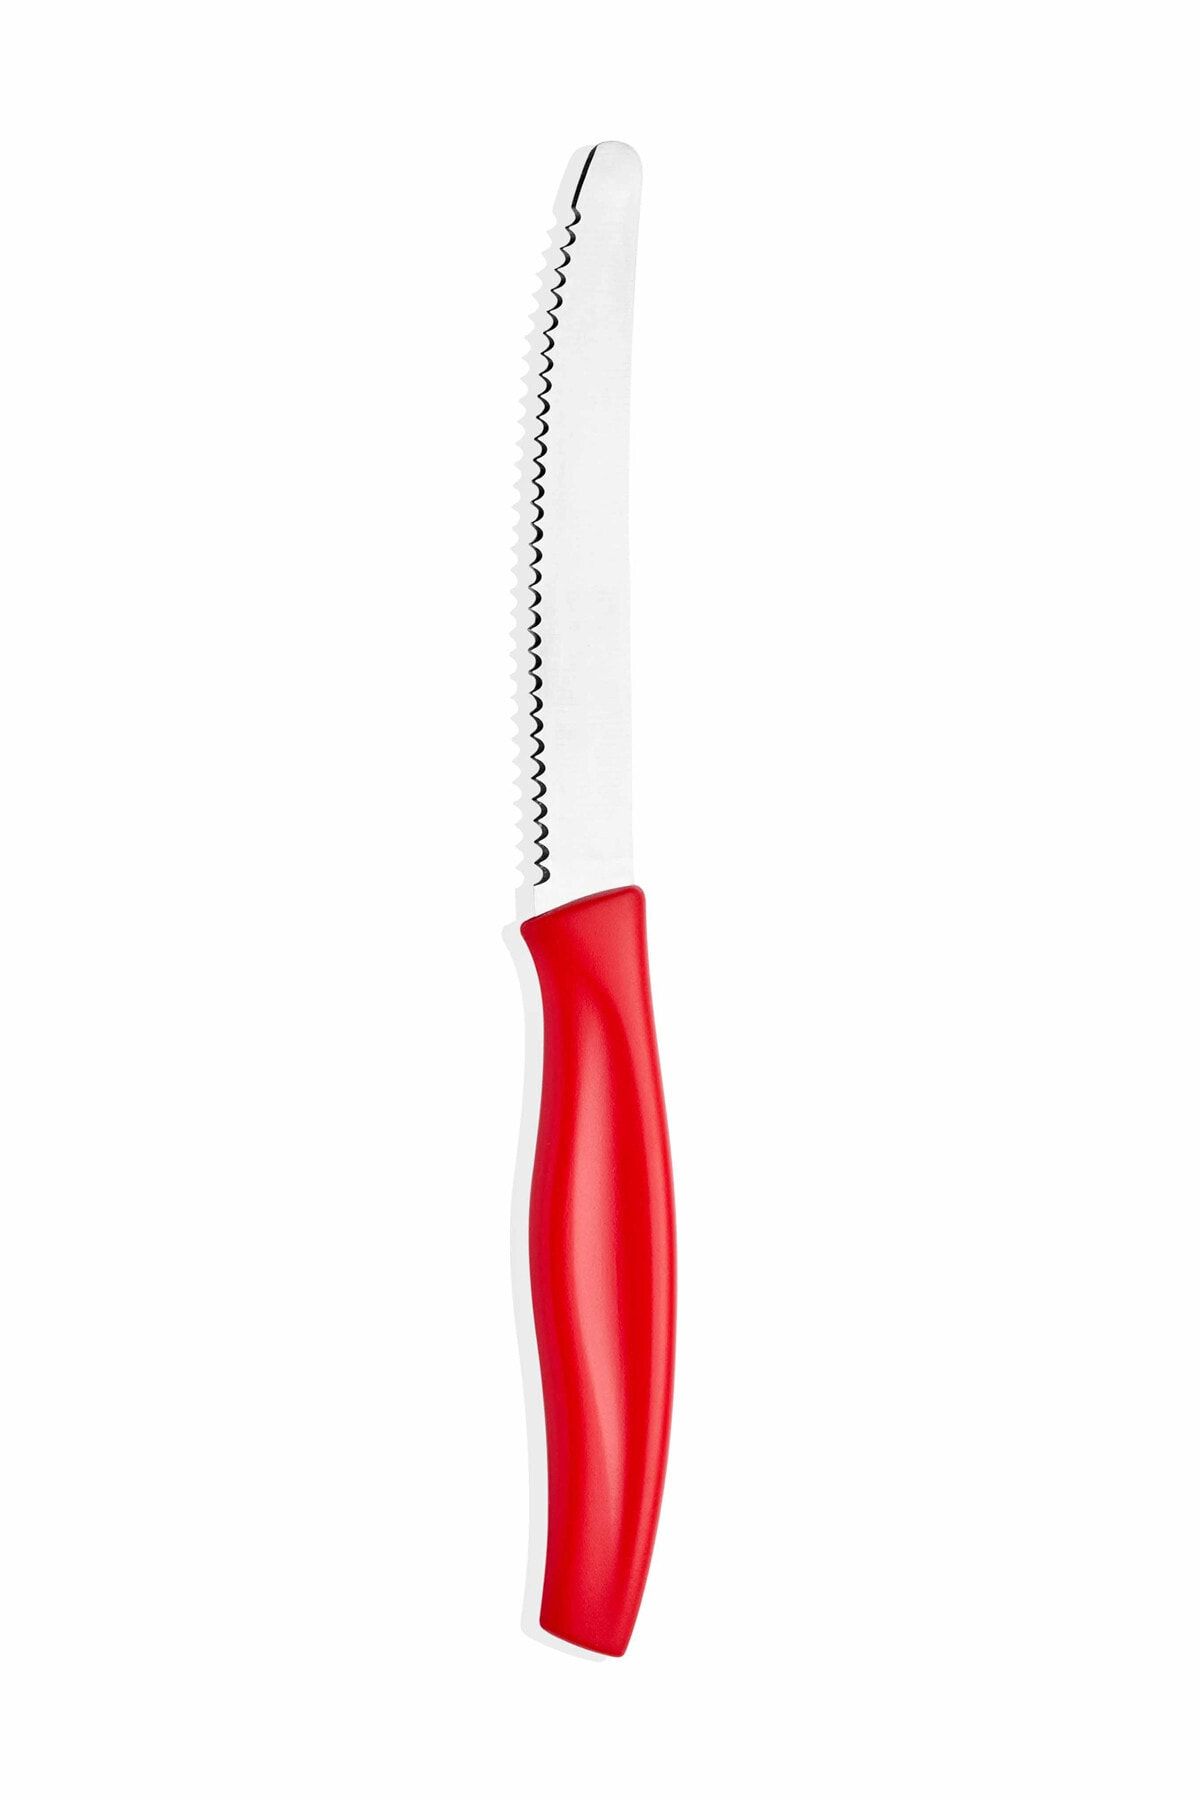 The Mia Cutt Mutfak Bıçağı 13 Cm - Kırmızı Cutt0025